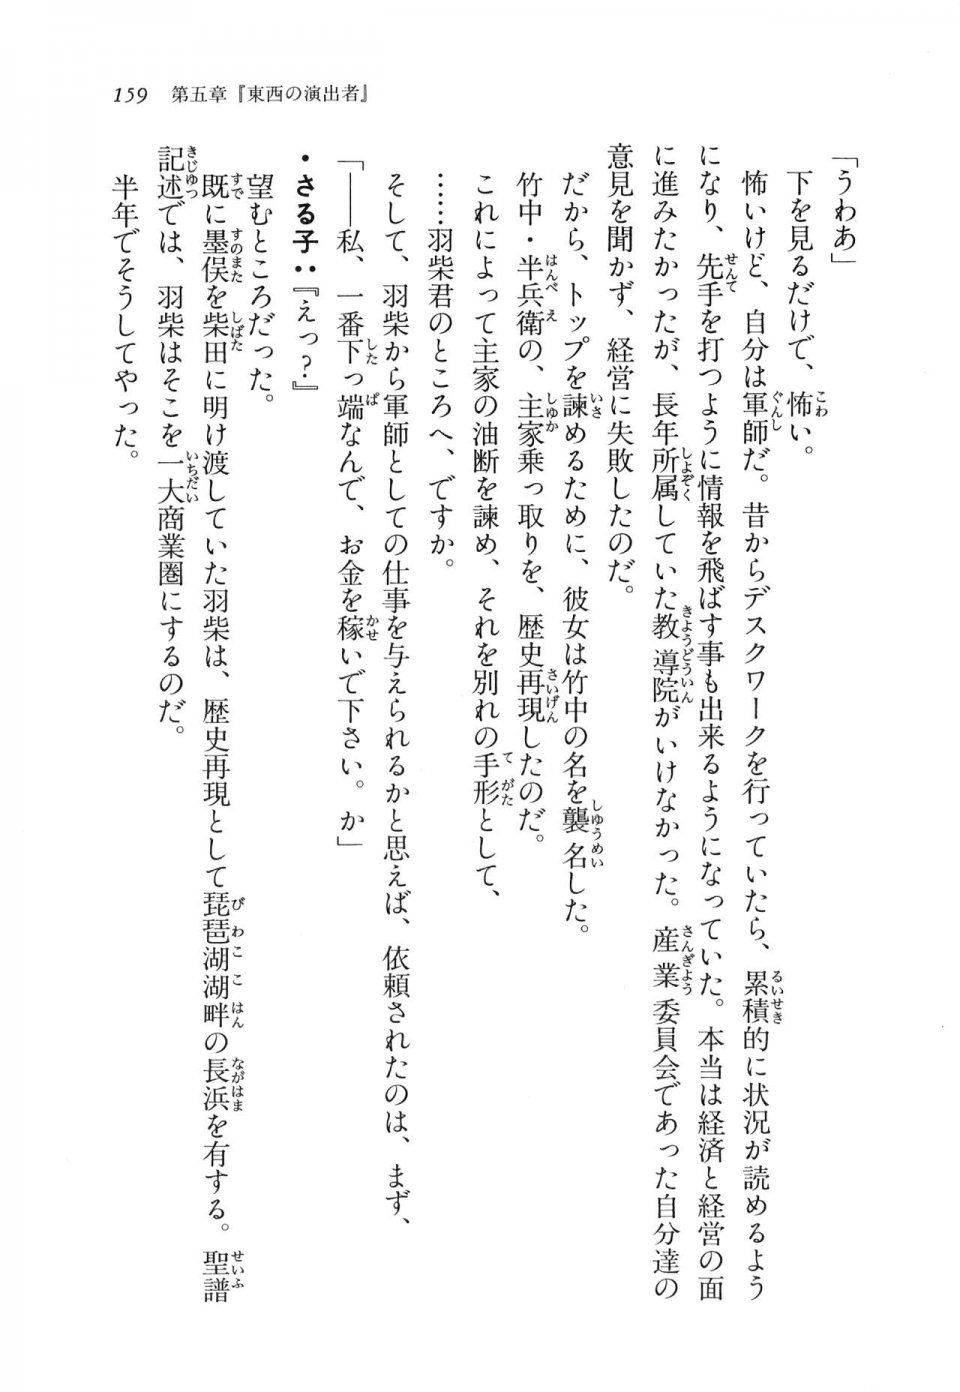 Kyoukai Senjou no Horizon LN Vol 11(5A) - Photo #159